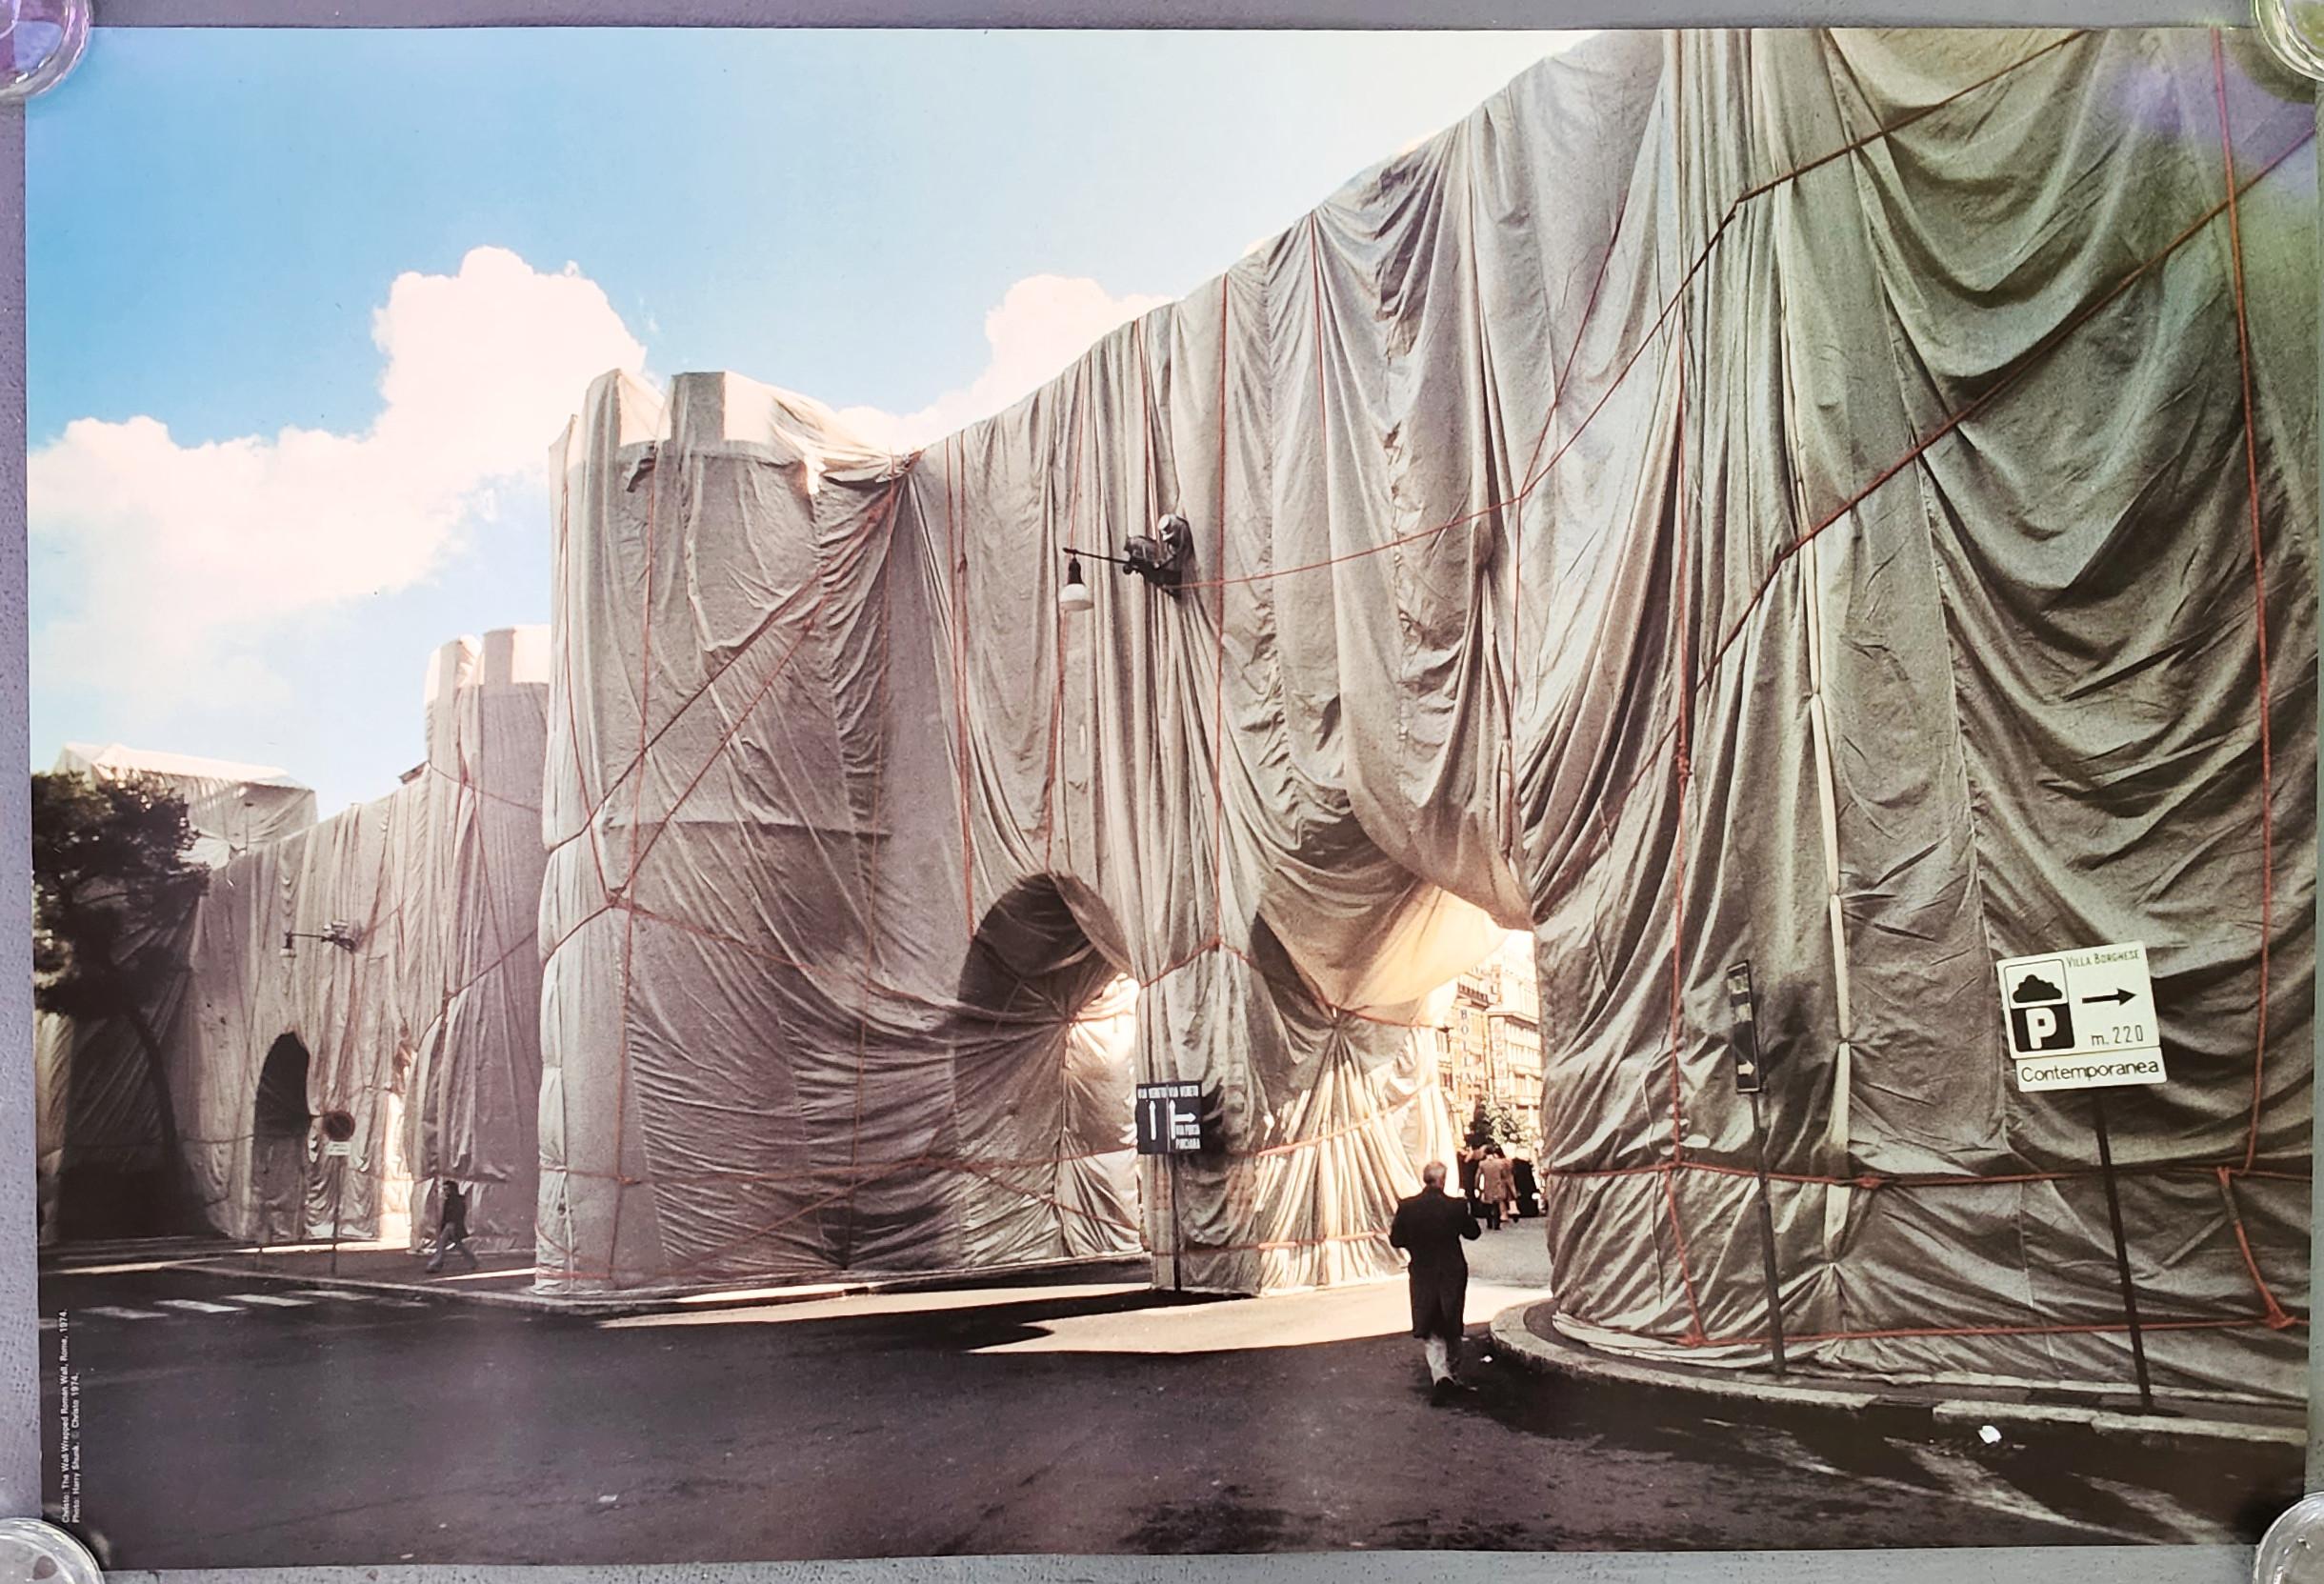 Le mur romain enveloppé, Rome, 1974 (Installation, art public, art enveloppé)